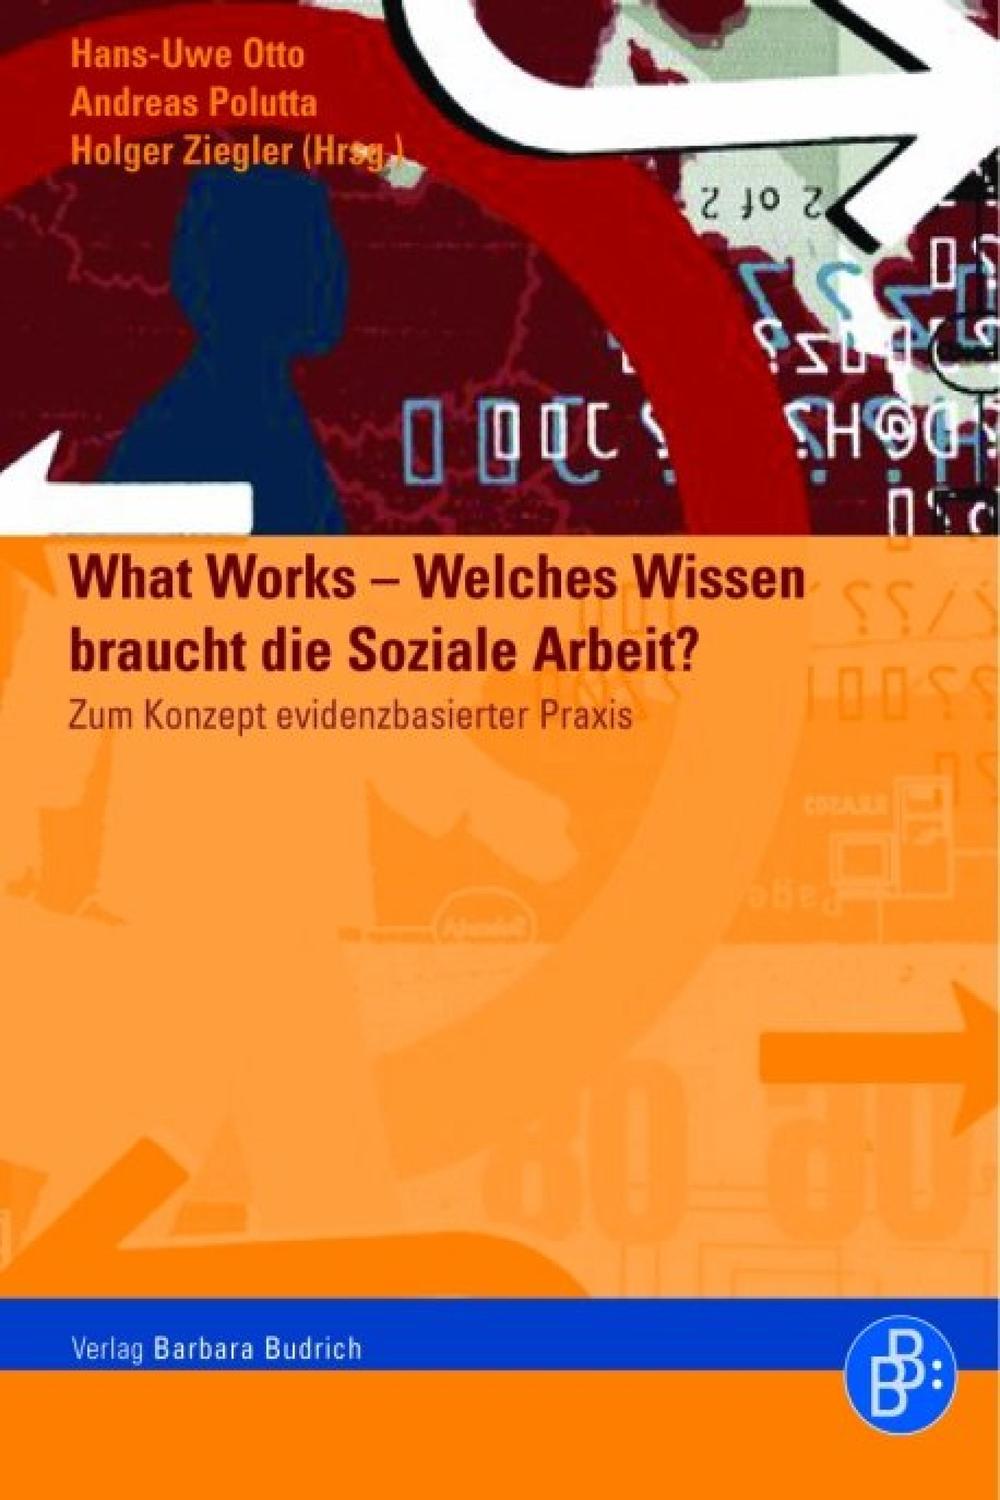 What Works – Welches Wissen braucht die soziale Arbeit? - Hans-Uwe Otto, Andreas Polutta, Holger Ziegler